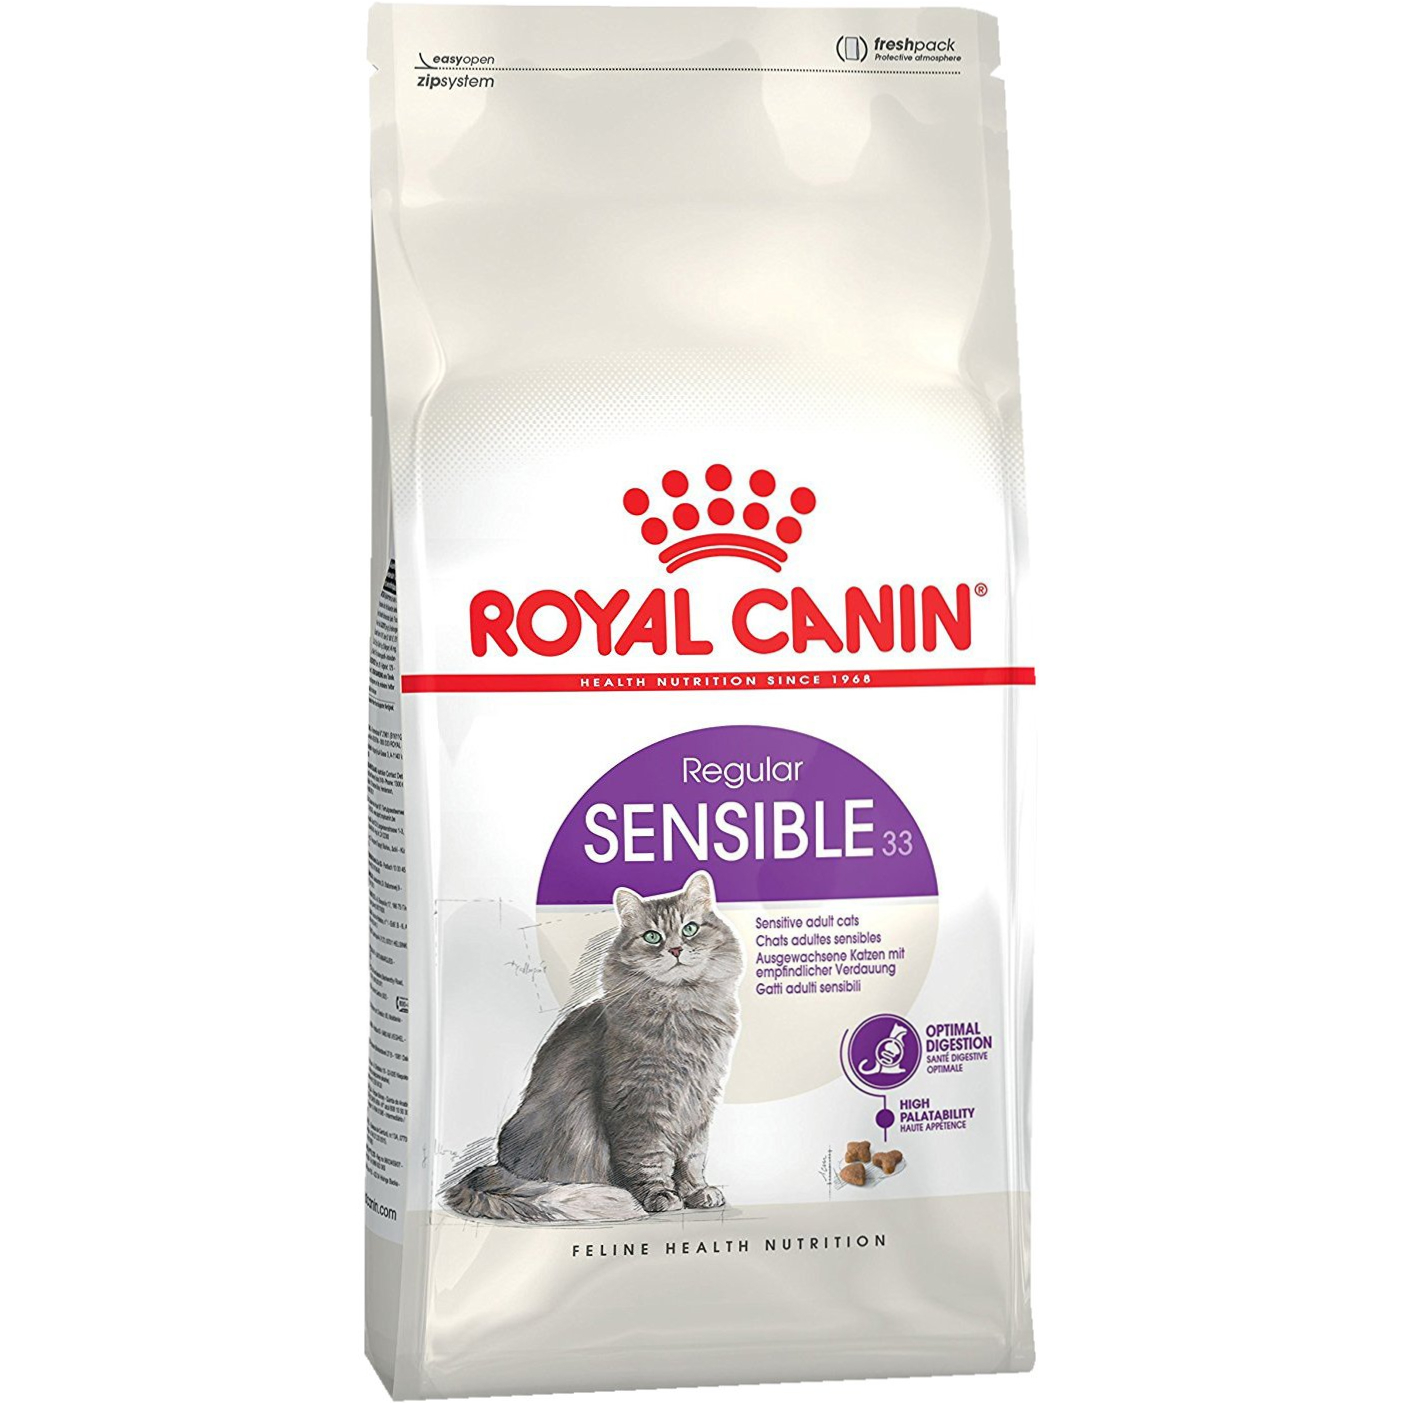 Корм для кошек Royal Canin Sensible 33 с чувствительным пищеварением 1,2 кг корм для кошек pro plan junior delicate для котят с чувствительным пищеварением с индейкой 1 5 кг